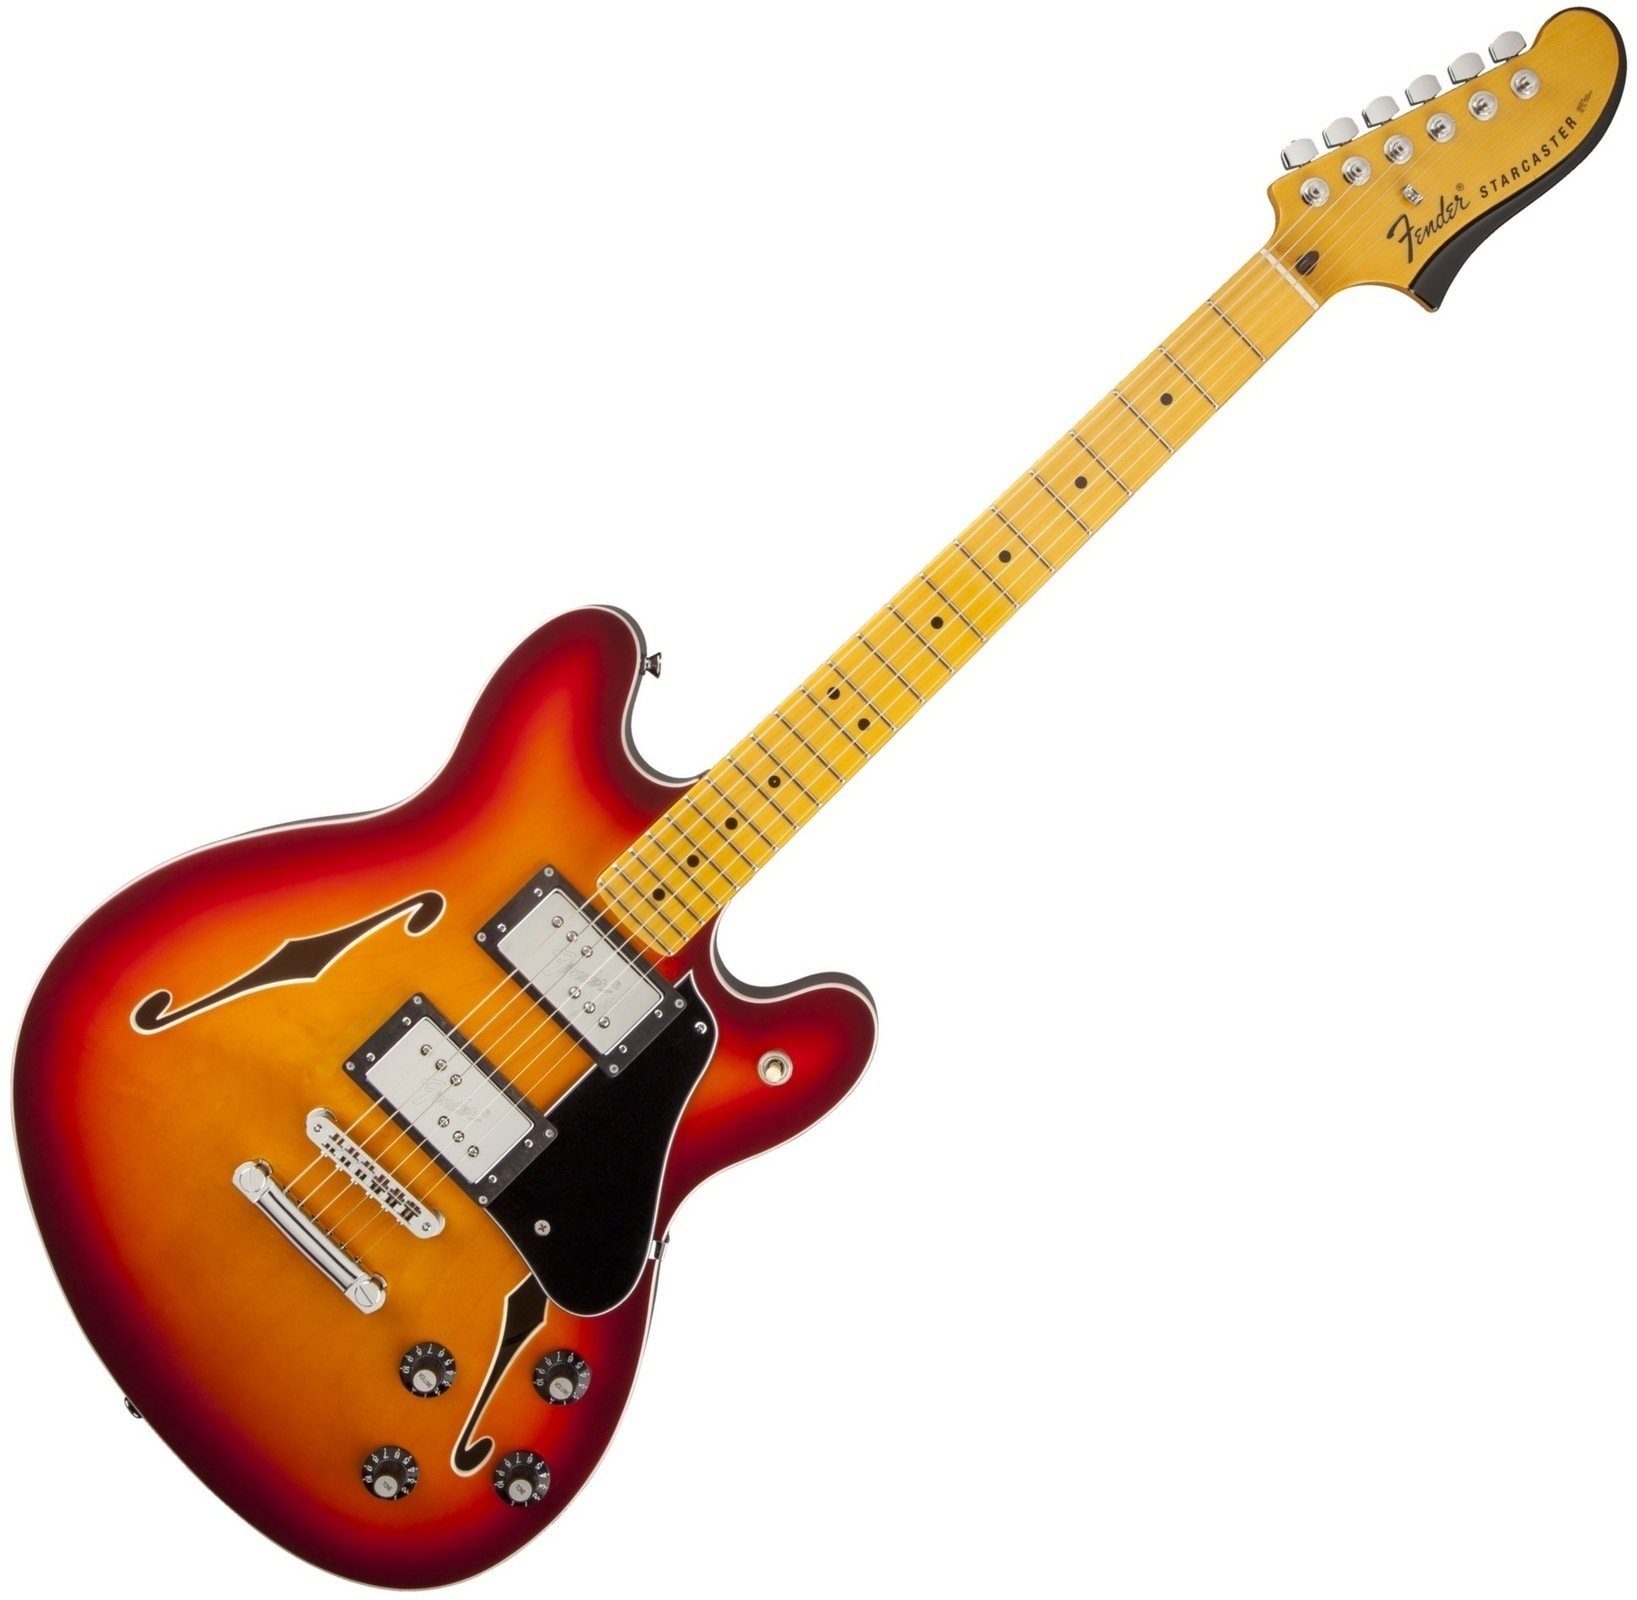 Jazz gitara Fender Starcaster, Maple Fingerboard, Aged Cherry Burst